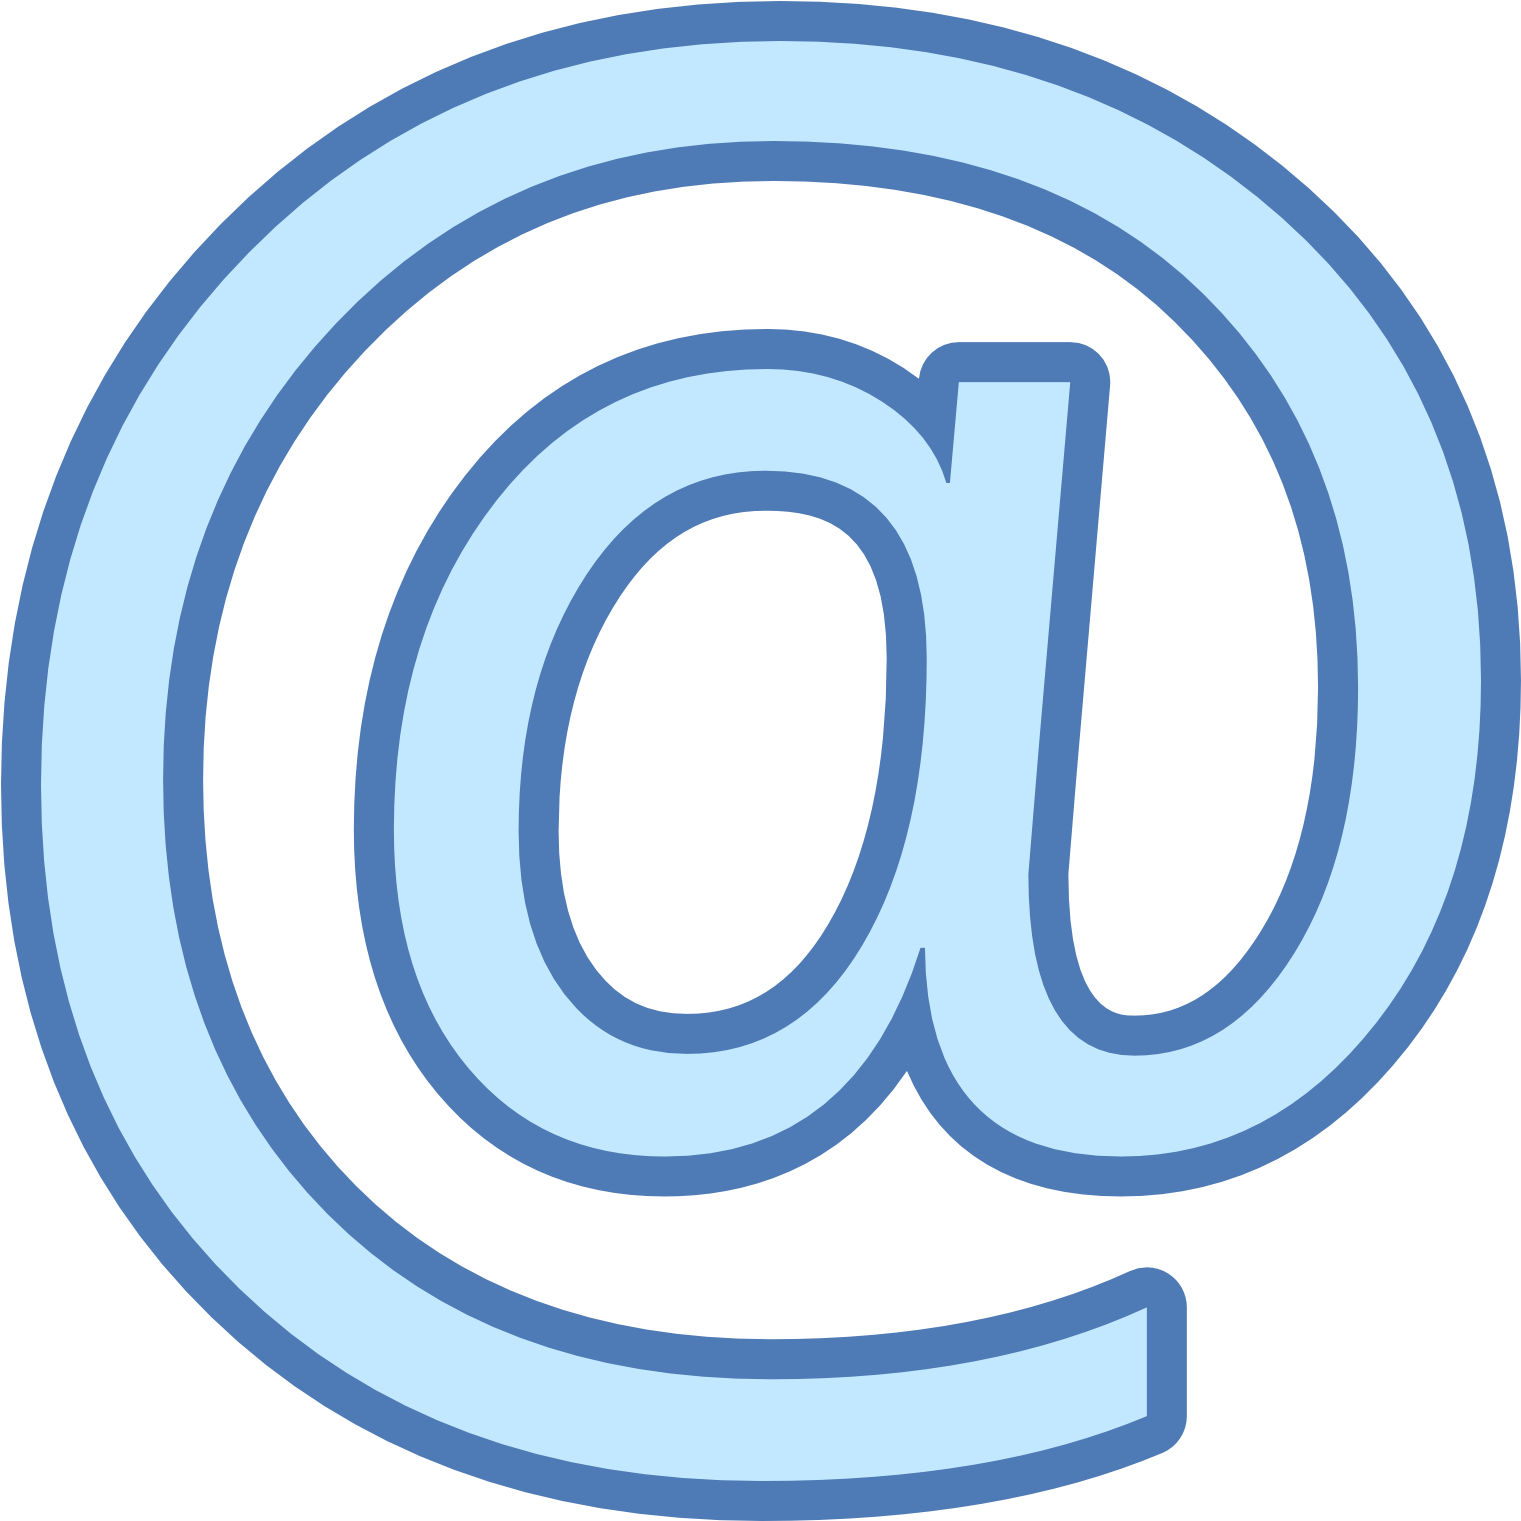 Значок почты. Символ электронной почты. Значок майл. Логотип электронной почты.